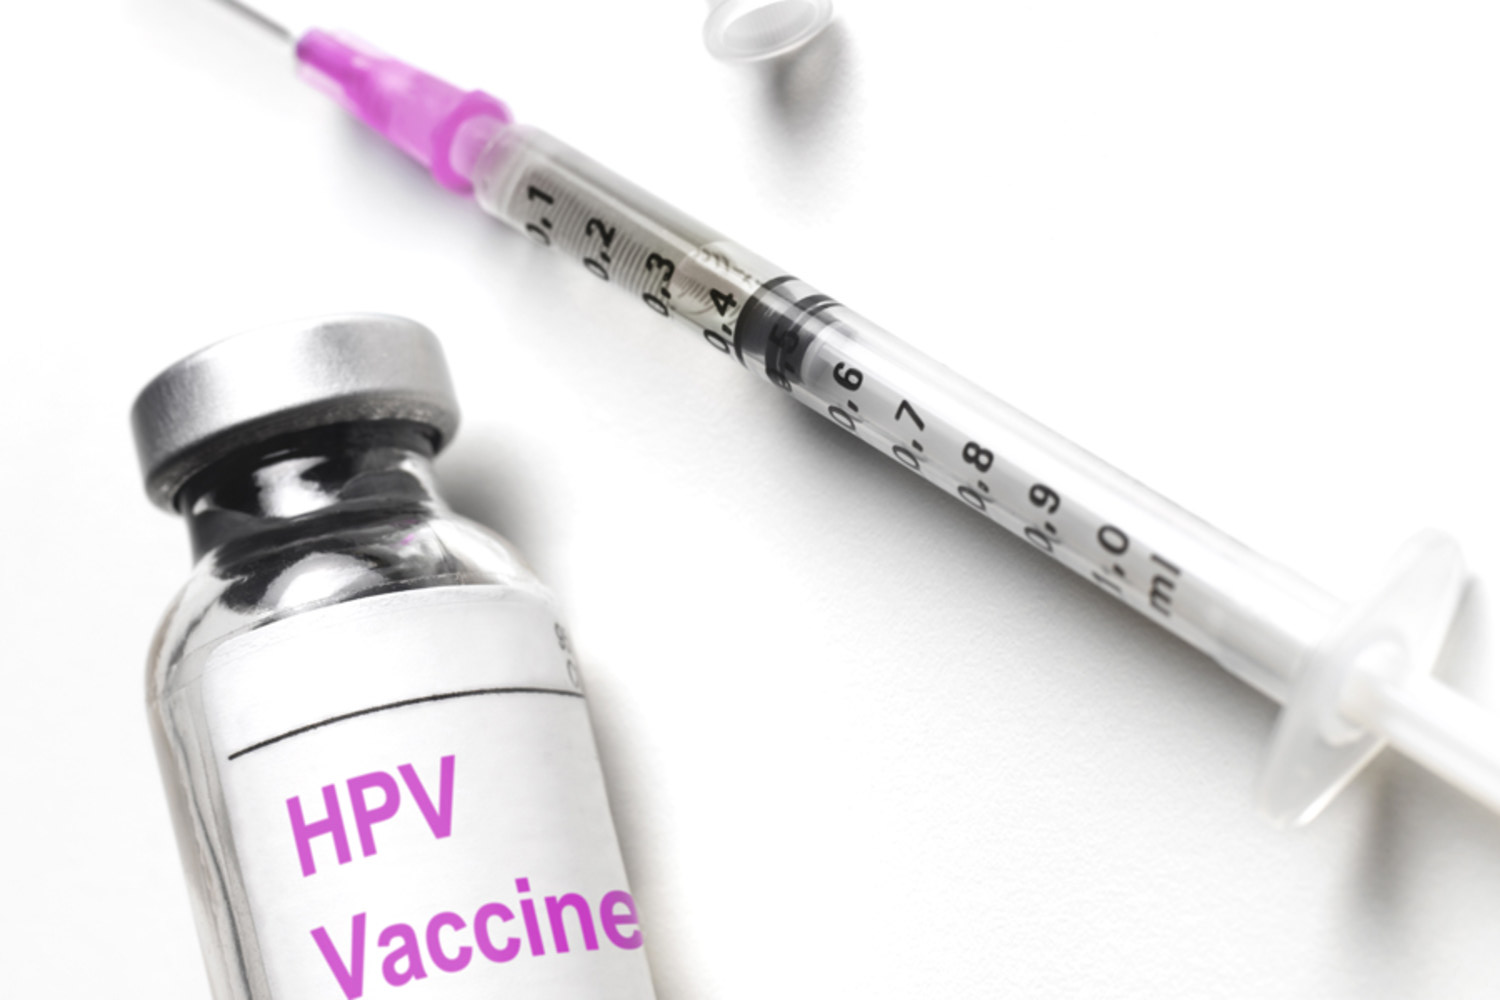 EU drug regulator starts medical investigation of HPV vaccines